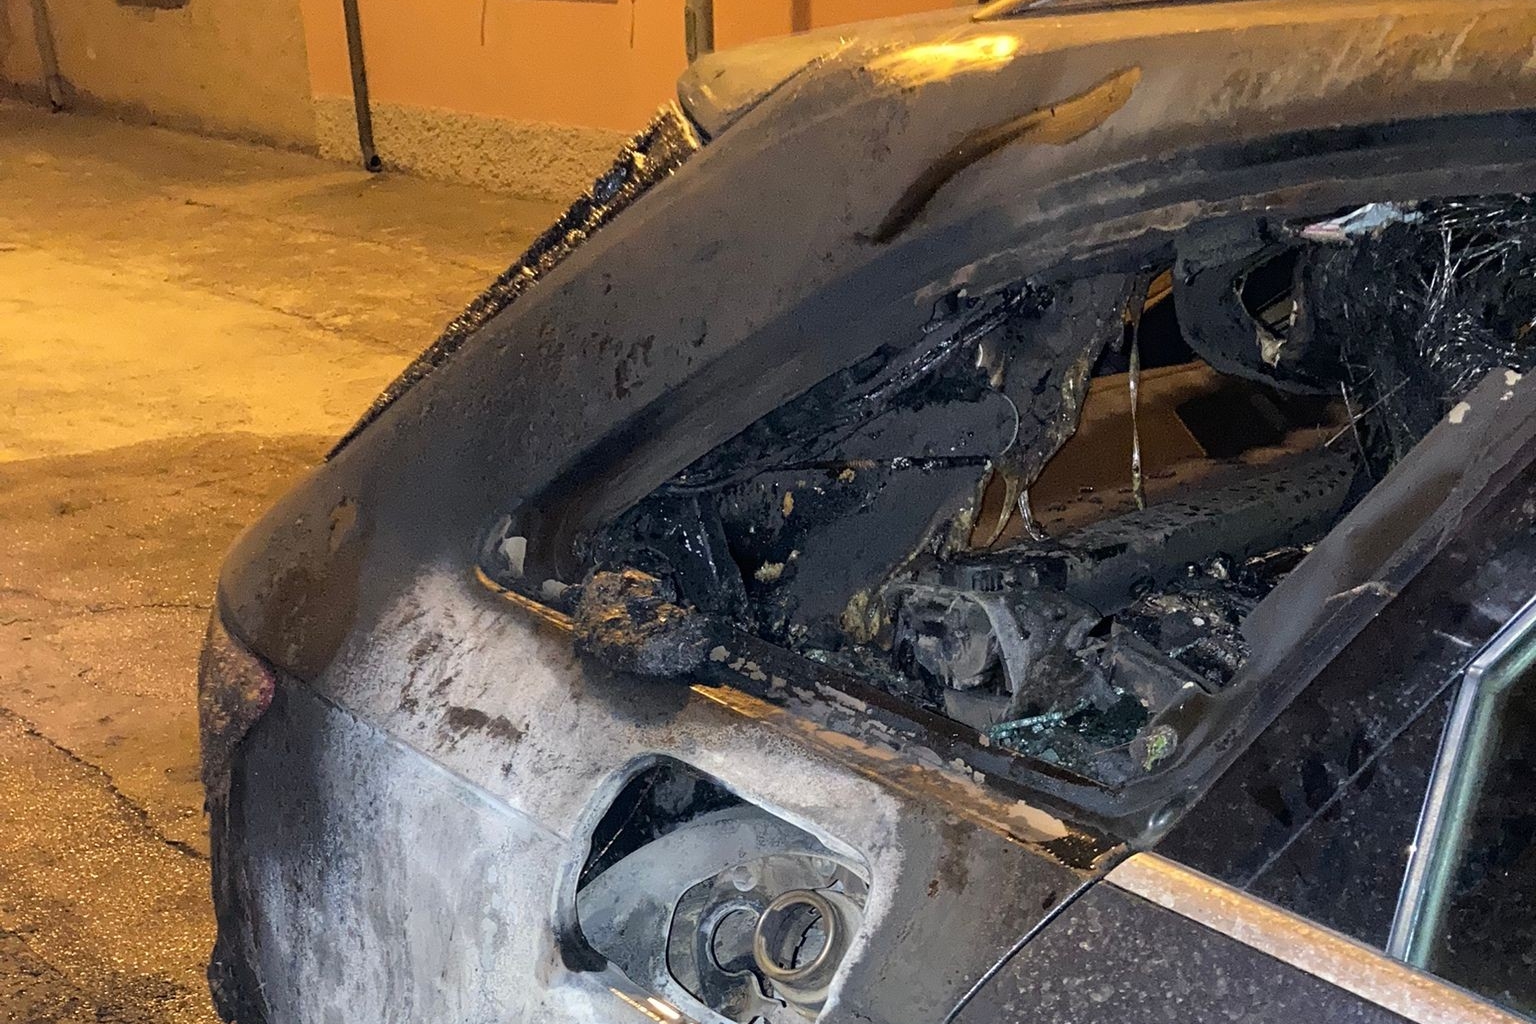 In fiamme l'auto del sindaco di Luras, ipotesi attentato. Lui: “Mai ricevute minacce”